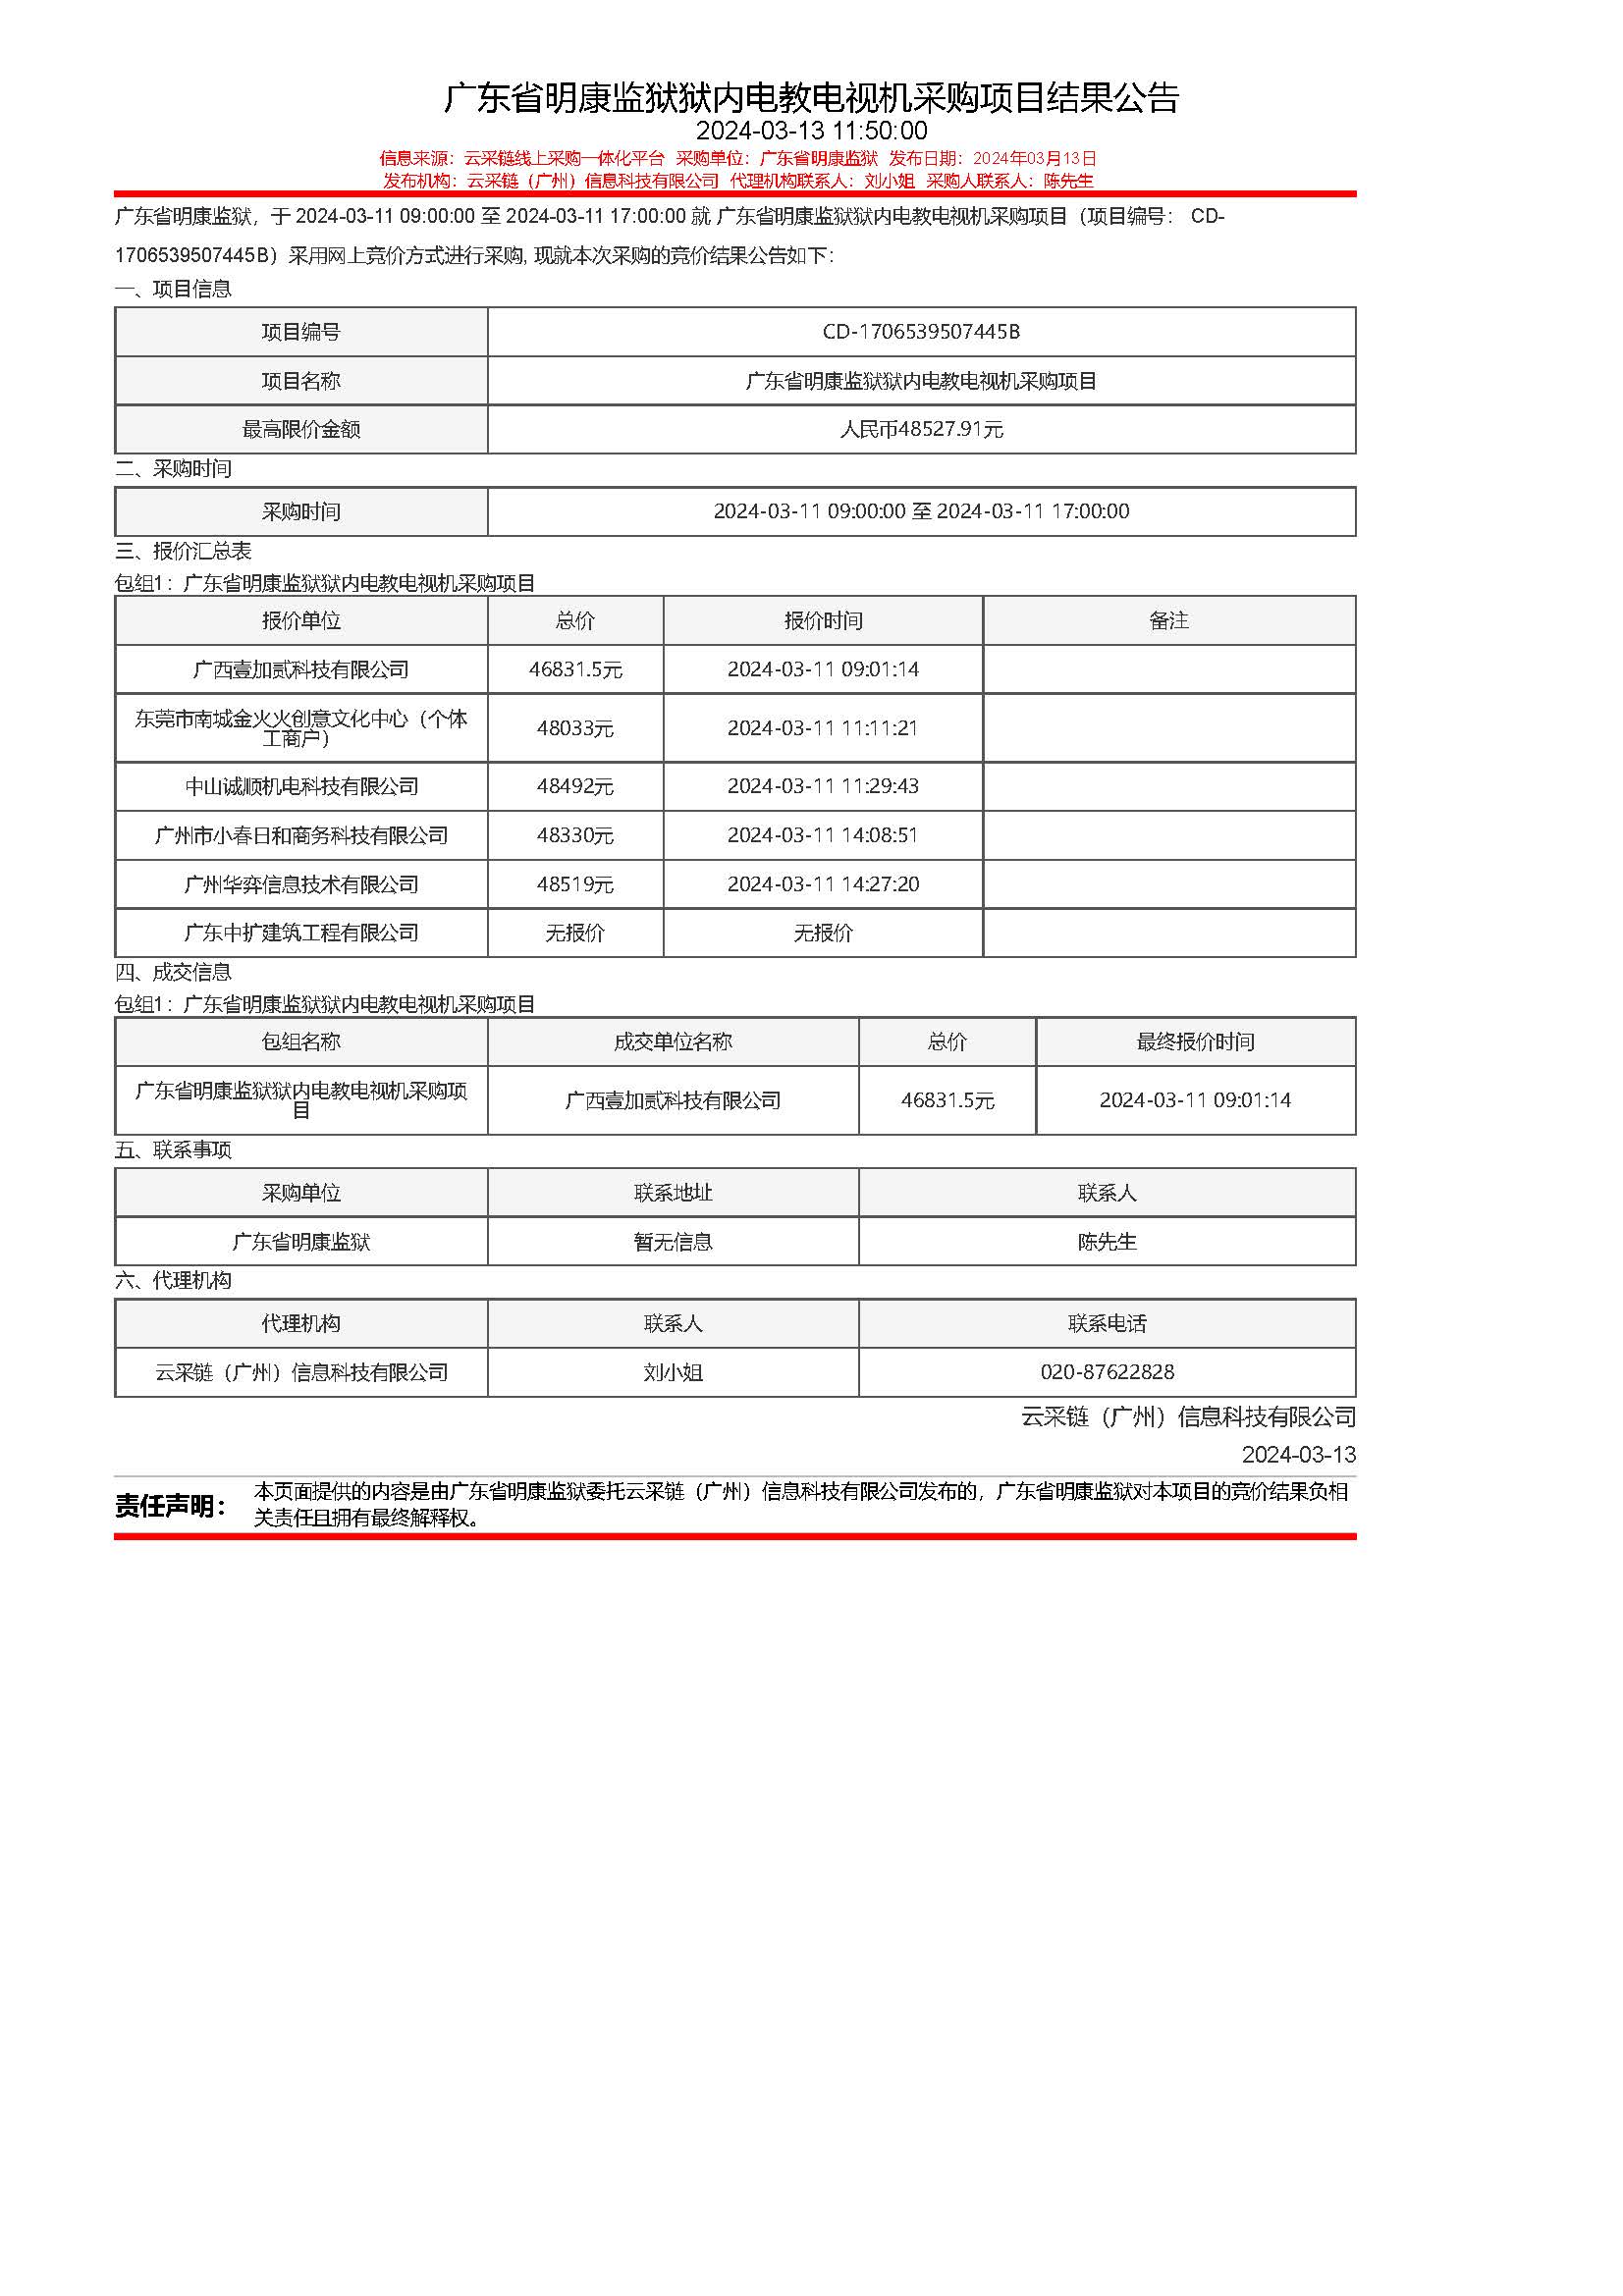 26.44广东省明康监狱狱内电教电视机采购项目结果公告.jpg